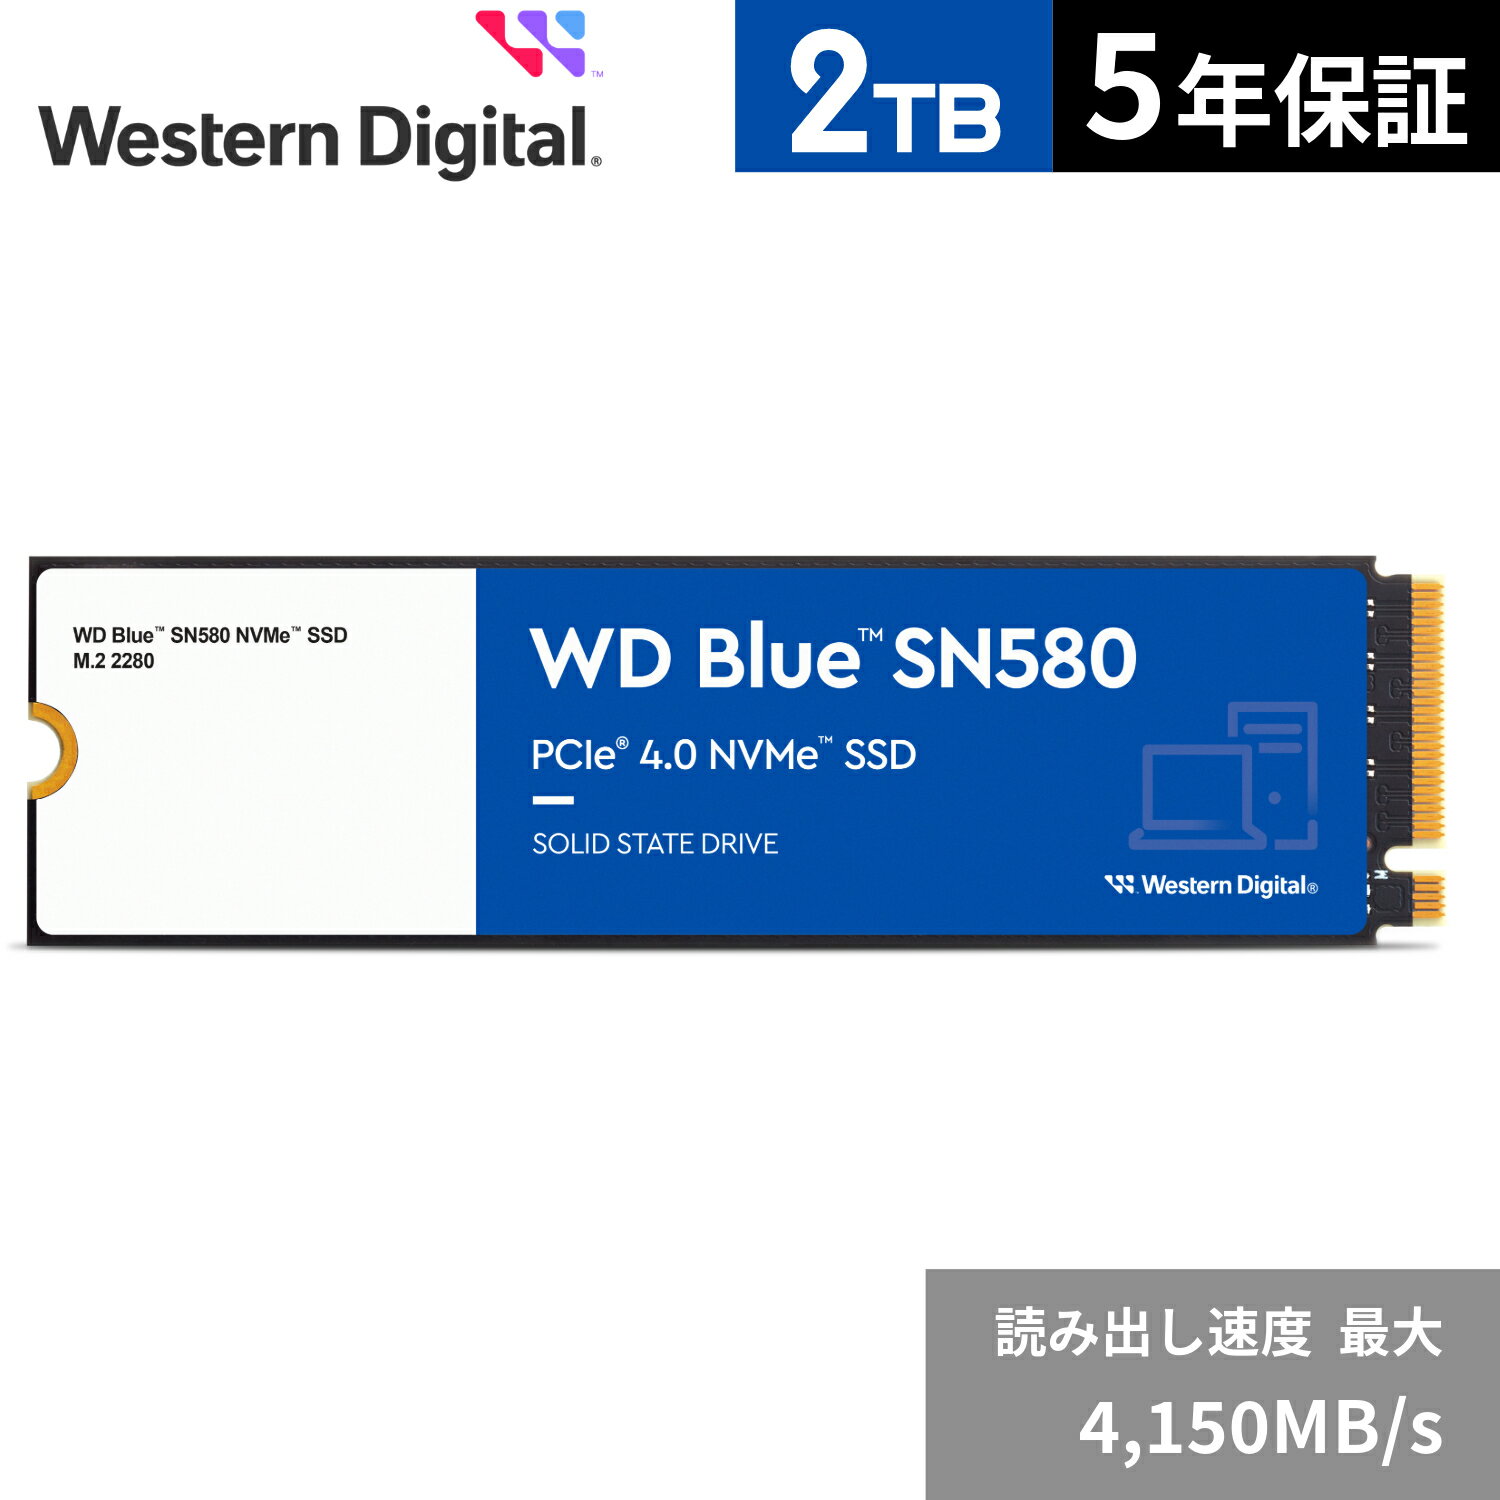 【国内正規流通品】Western Digital ウエスタンデジタル WD Blue SN580 M.2-2280 NVMe SSD 2TB (読取り最大 4,150MB/秒) 5年保証 WDS200T3B0E 省電力 デスクトップPC ノートPC 増設 クリエイティブ 長寿命 増設 高速 PCパーツ 内蔵ssd